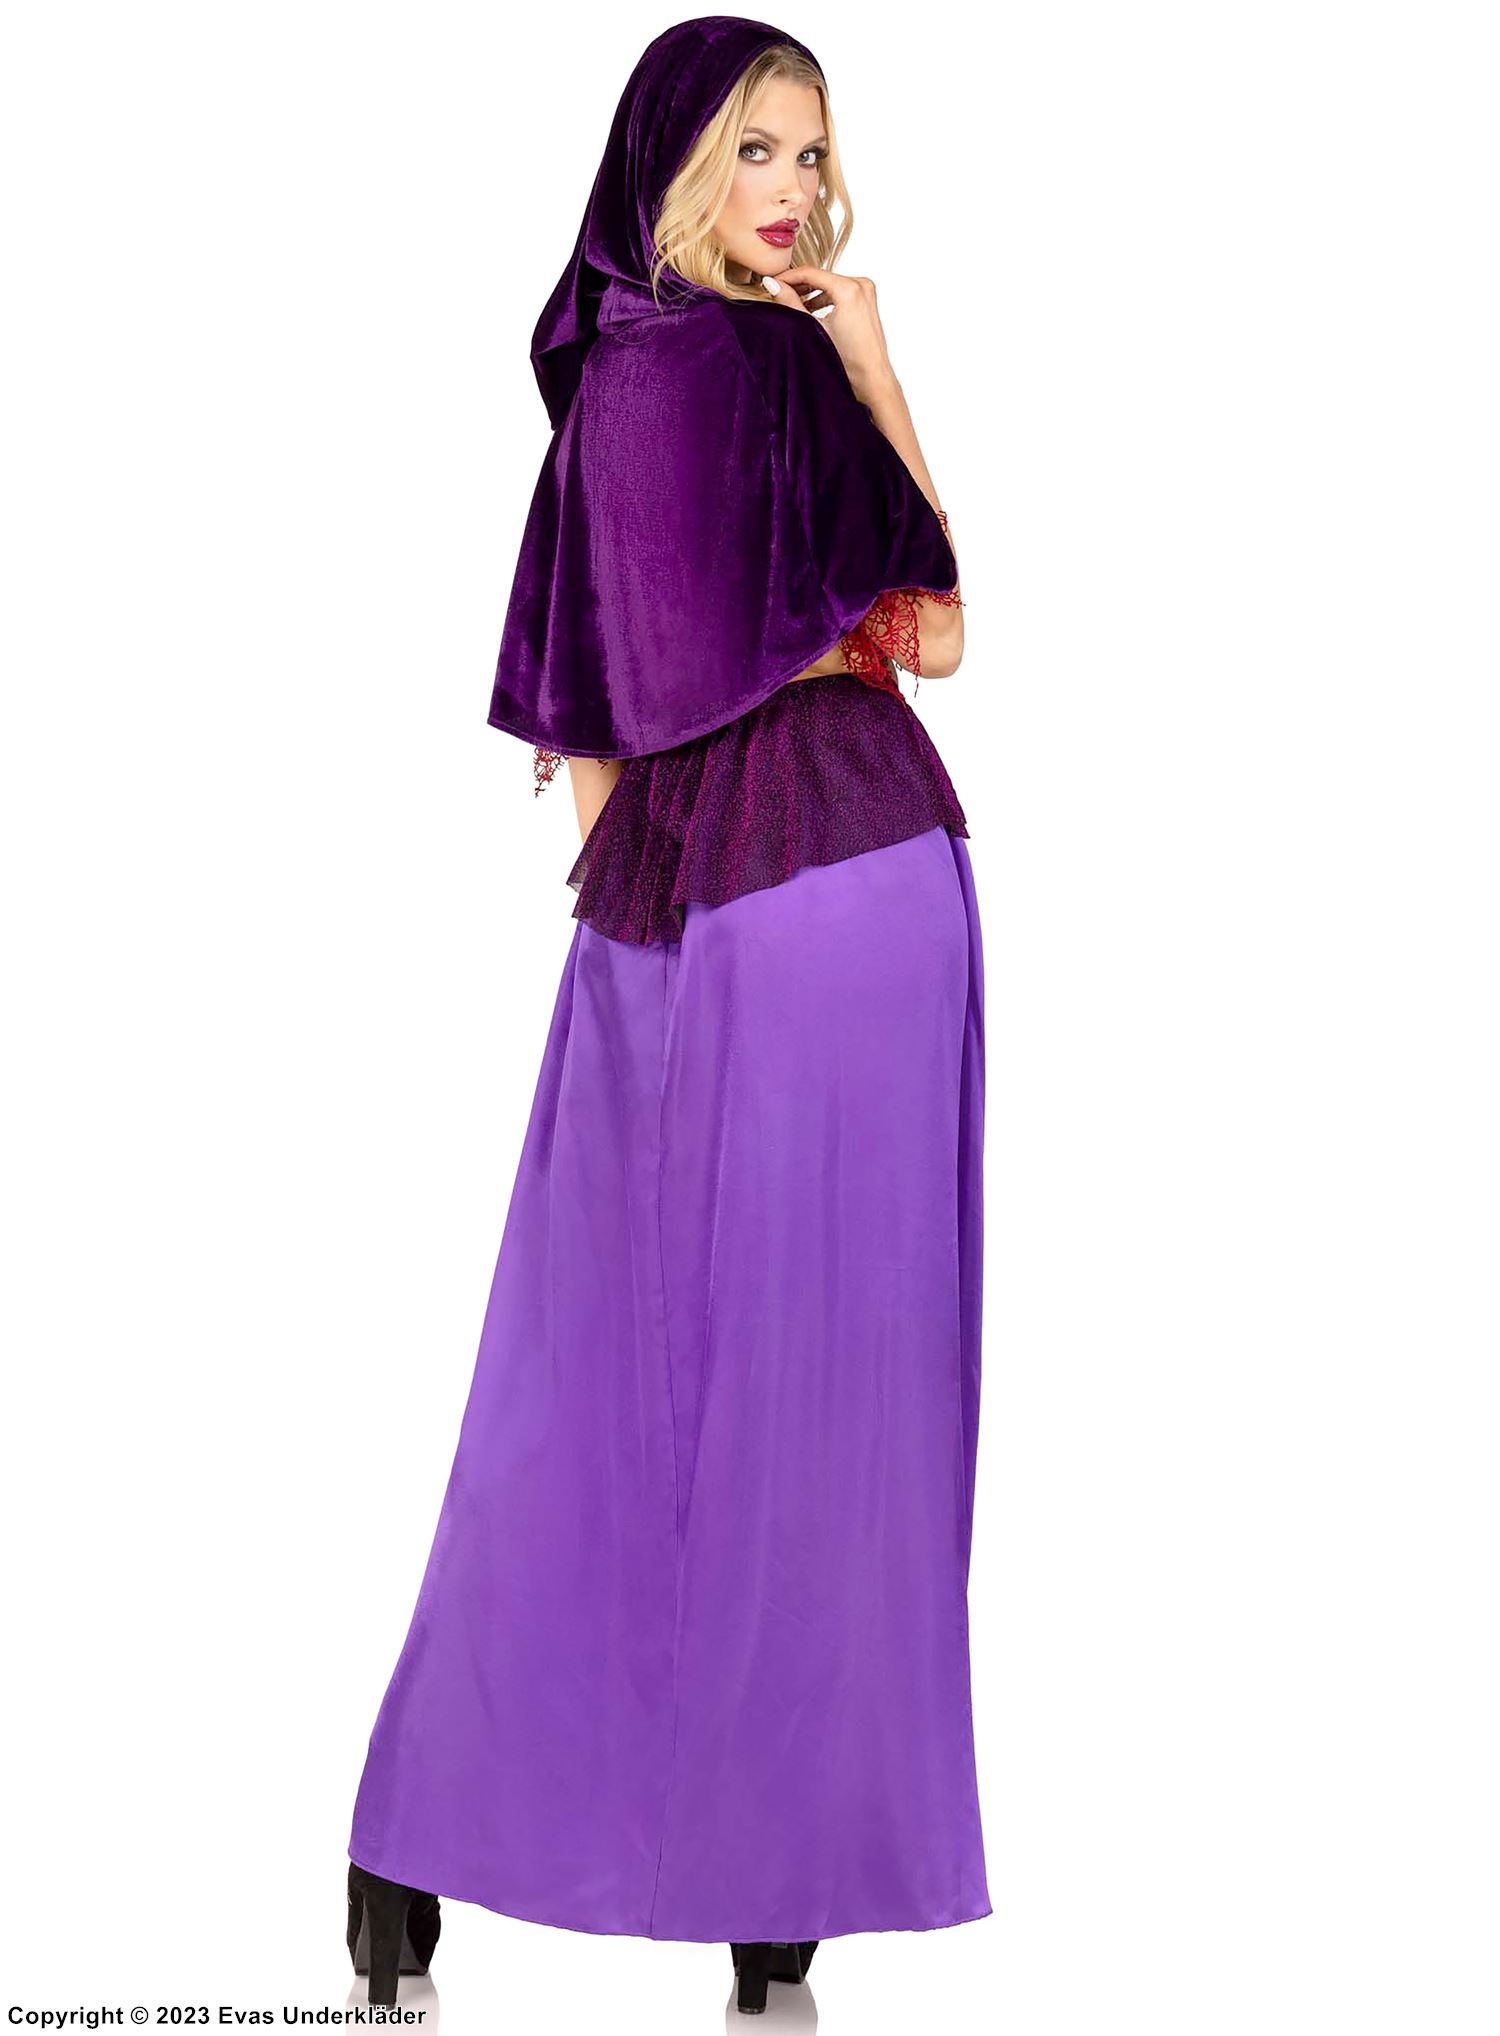 Witch, top and skirt costume, velvet, high slit, off shoulder